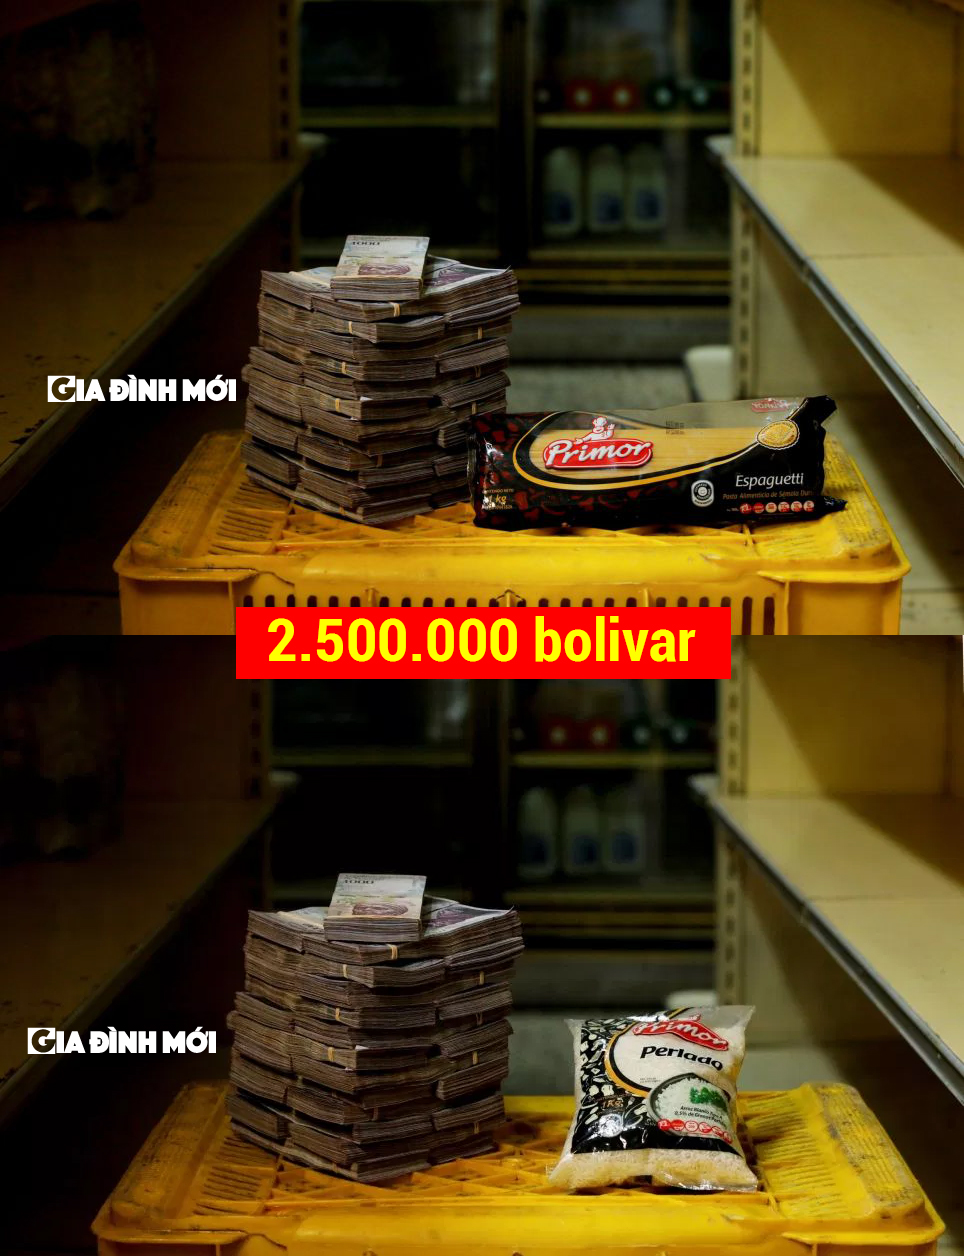 Giá của 1kg mỳ ý bằng tiền với giá 1kg gạo, khoảng 2,5 triệu bolivar.